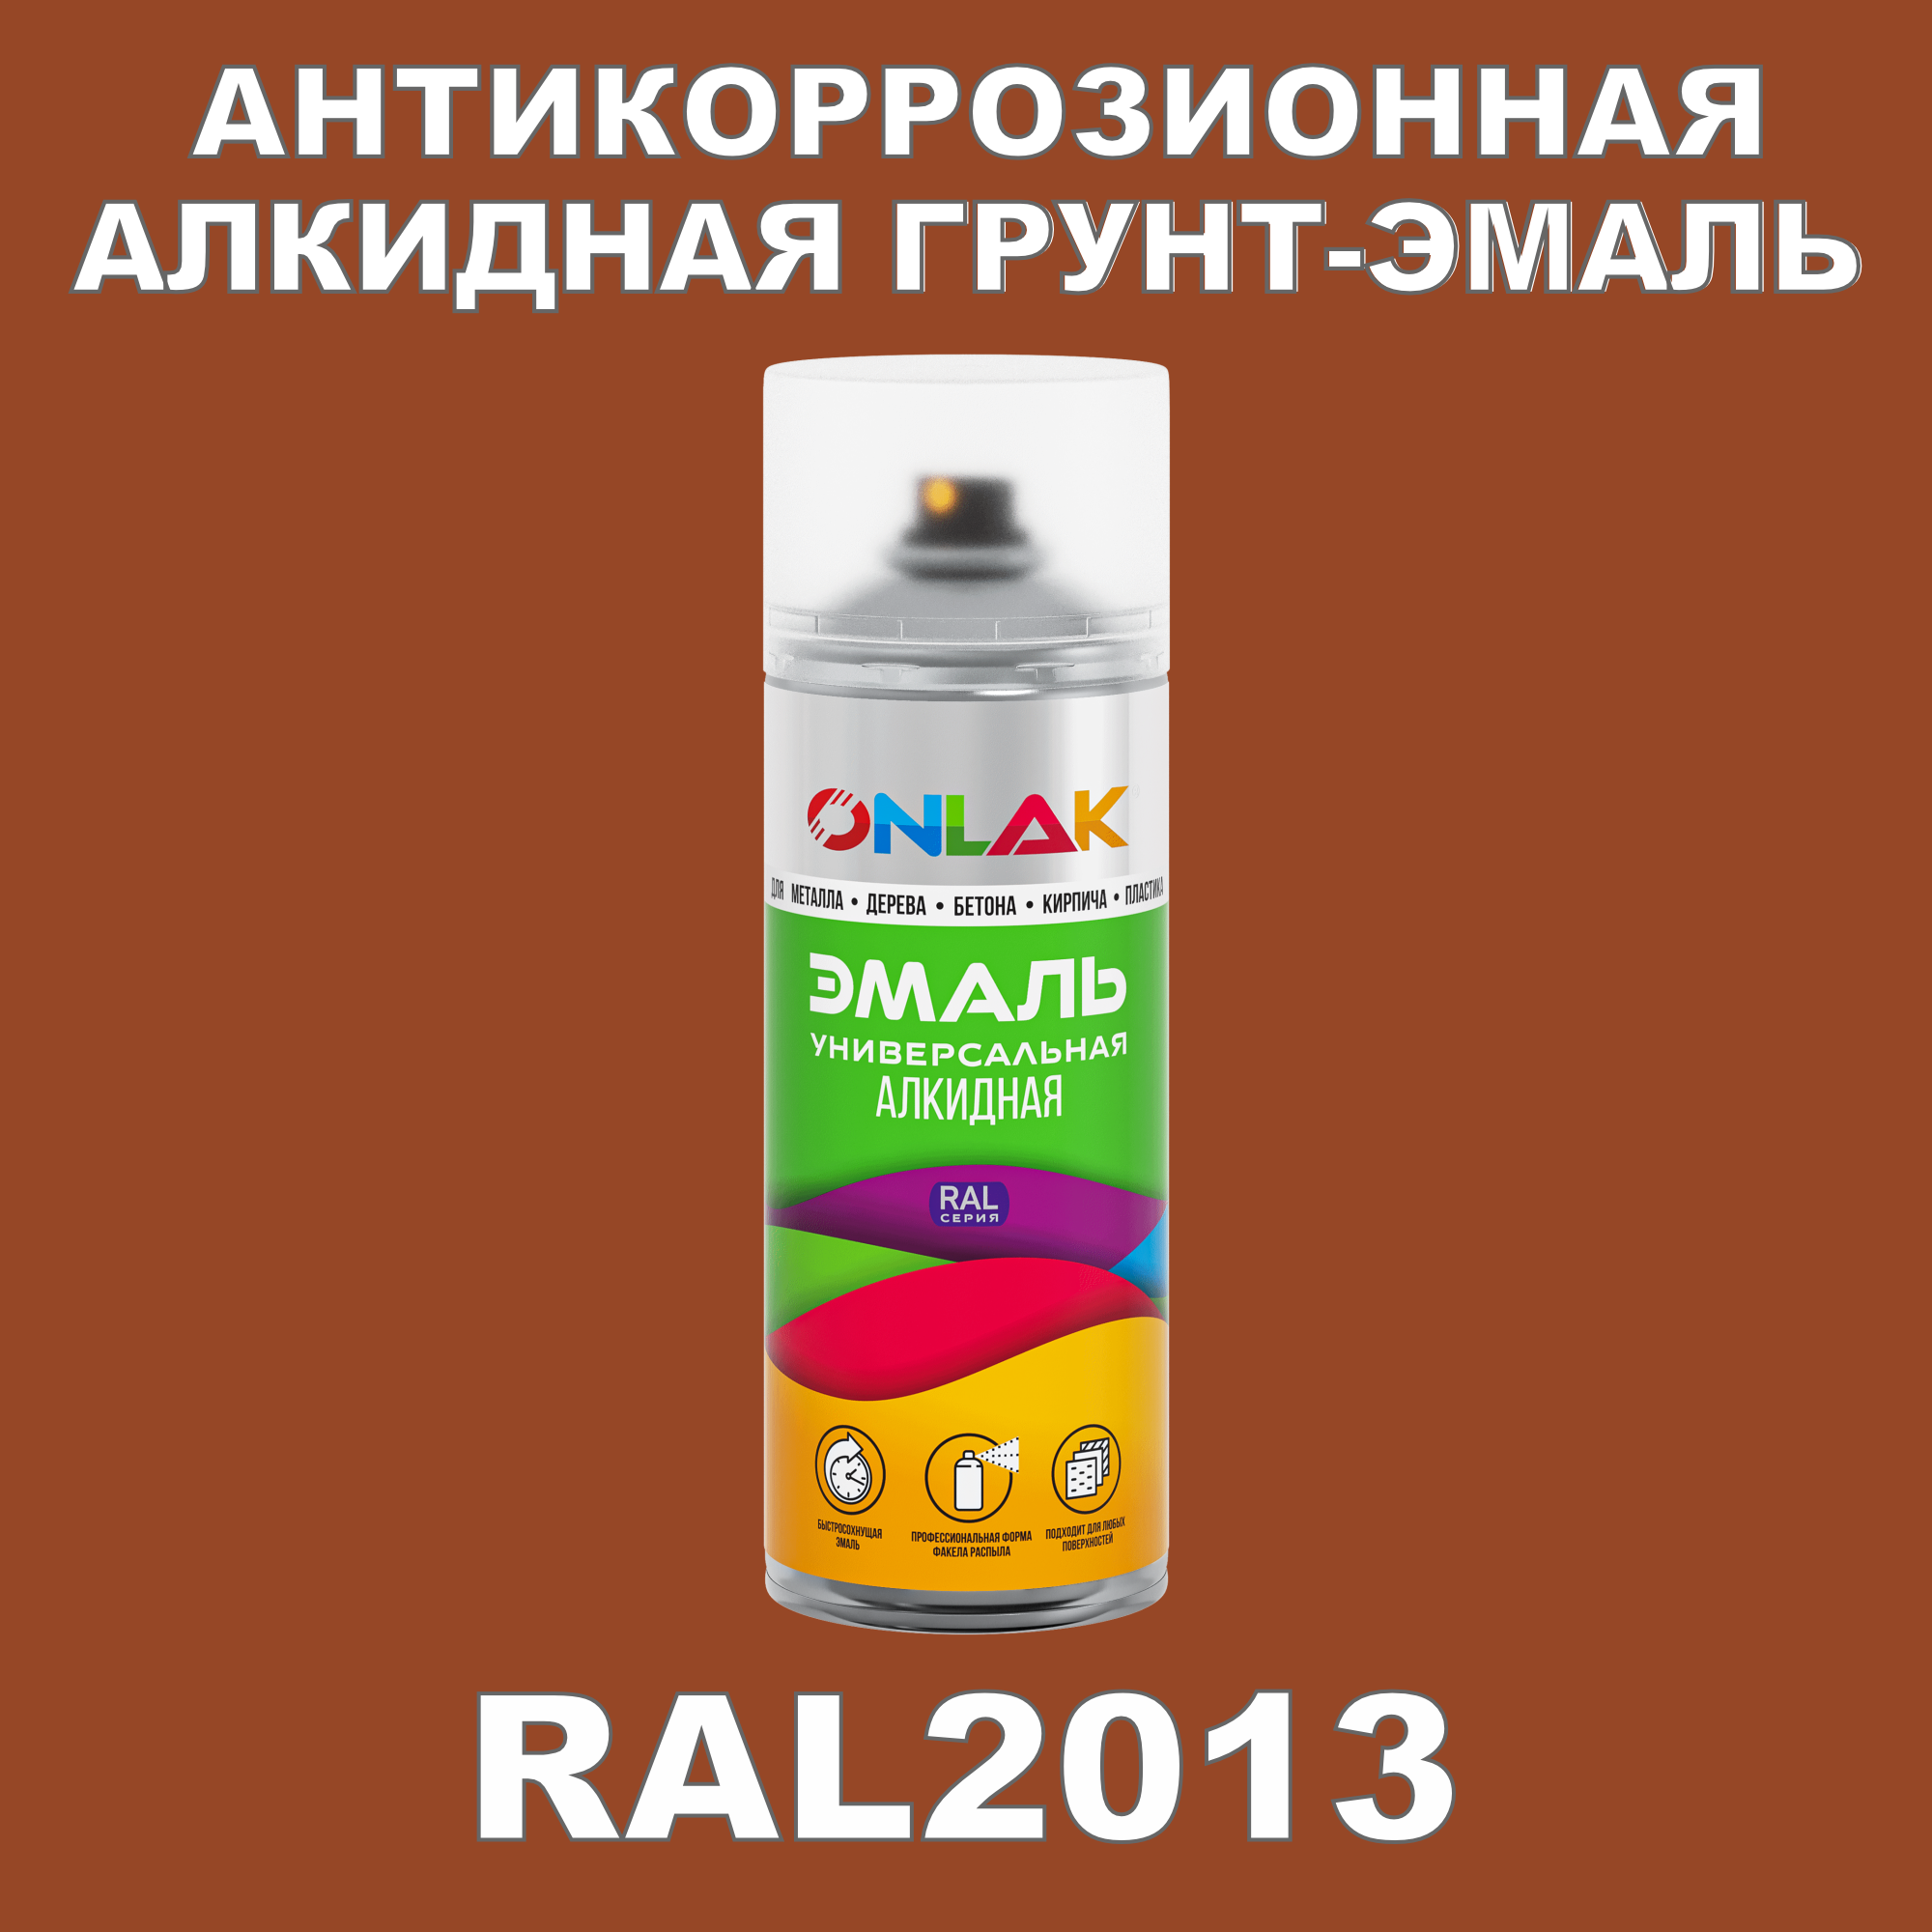 Антикоррозионная грунт-эмаль ONLAK RAL2013 полуматовая для металла и защиты от ржавчины